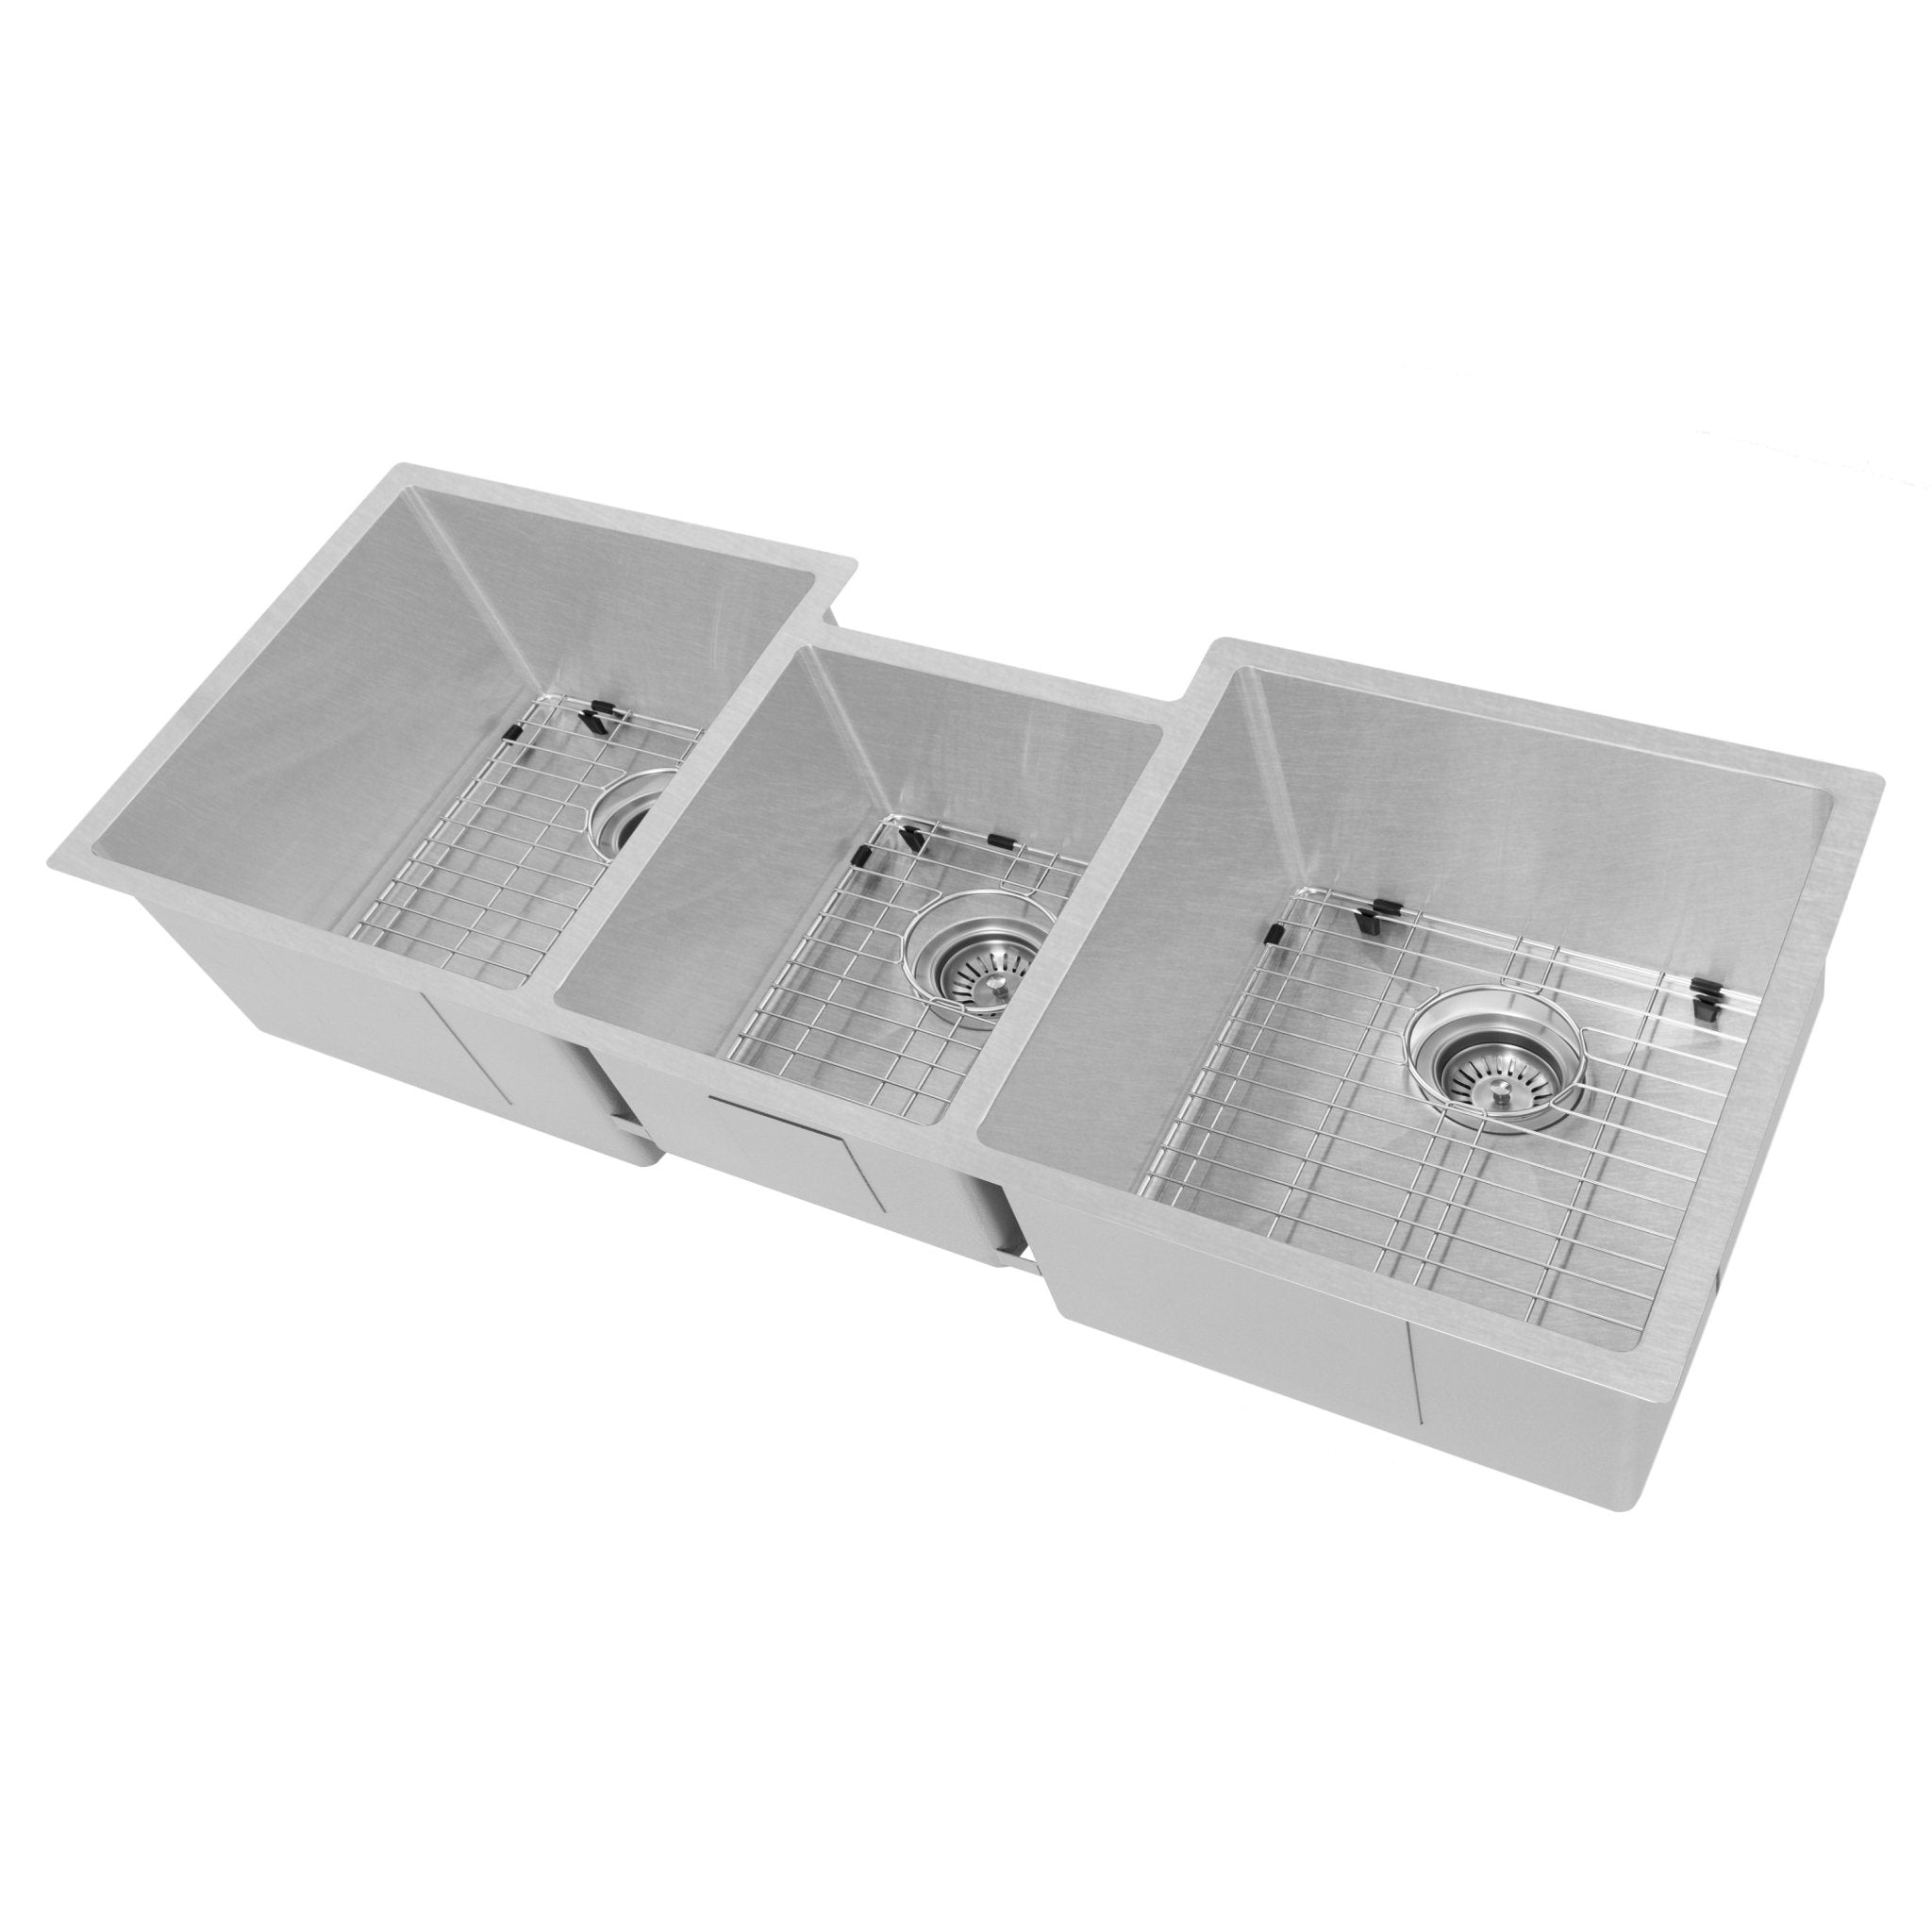 ZLINE 45 in. Breckenridge Undermount Triple Bowl Kitchen Sink (SLT-45) DuraSnow®